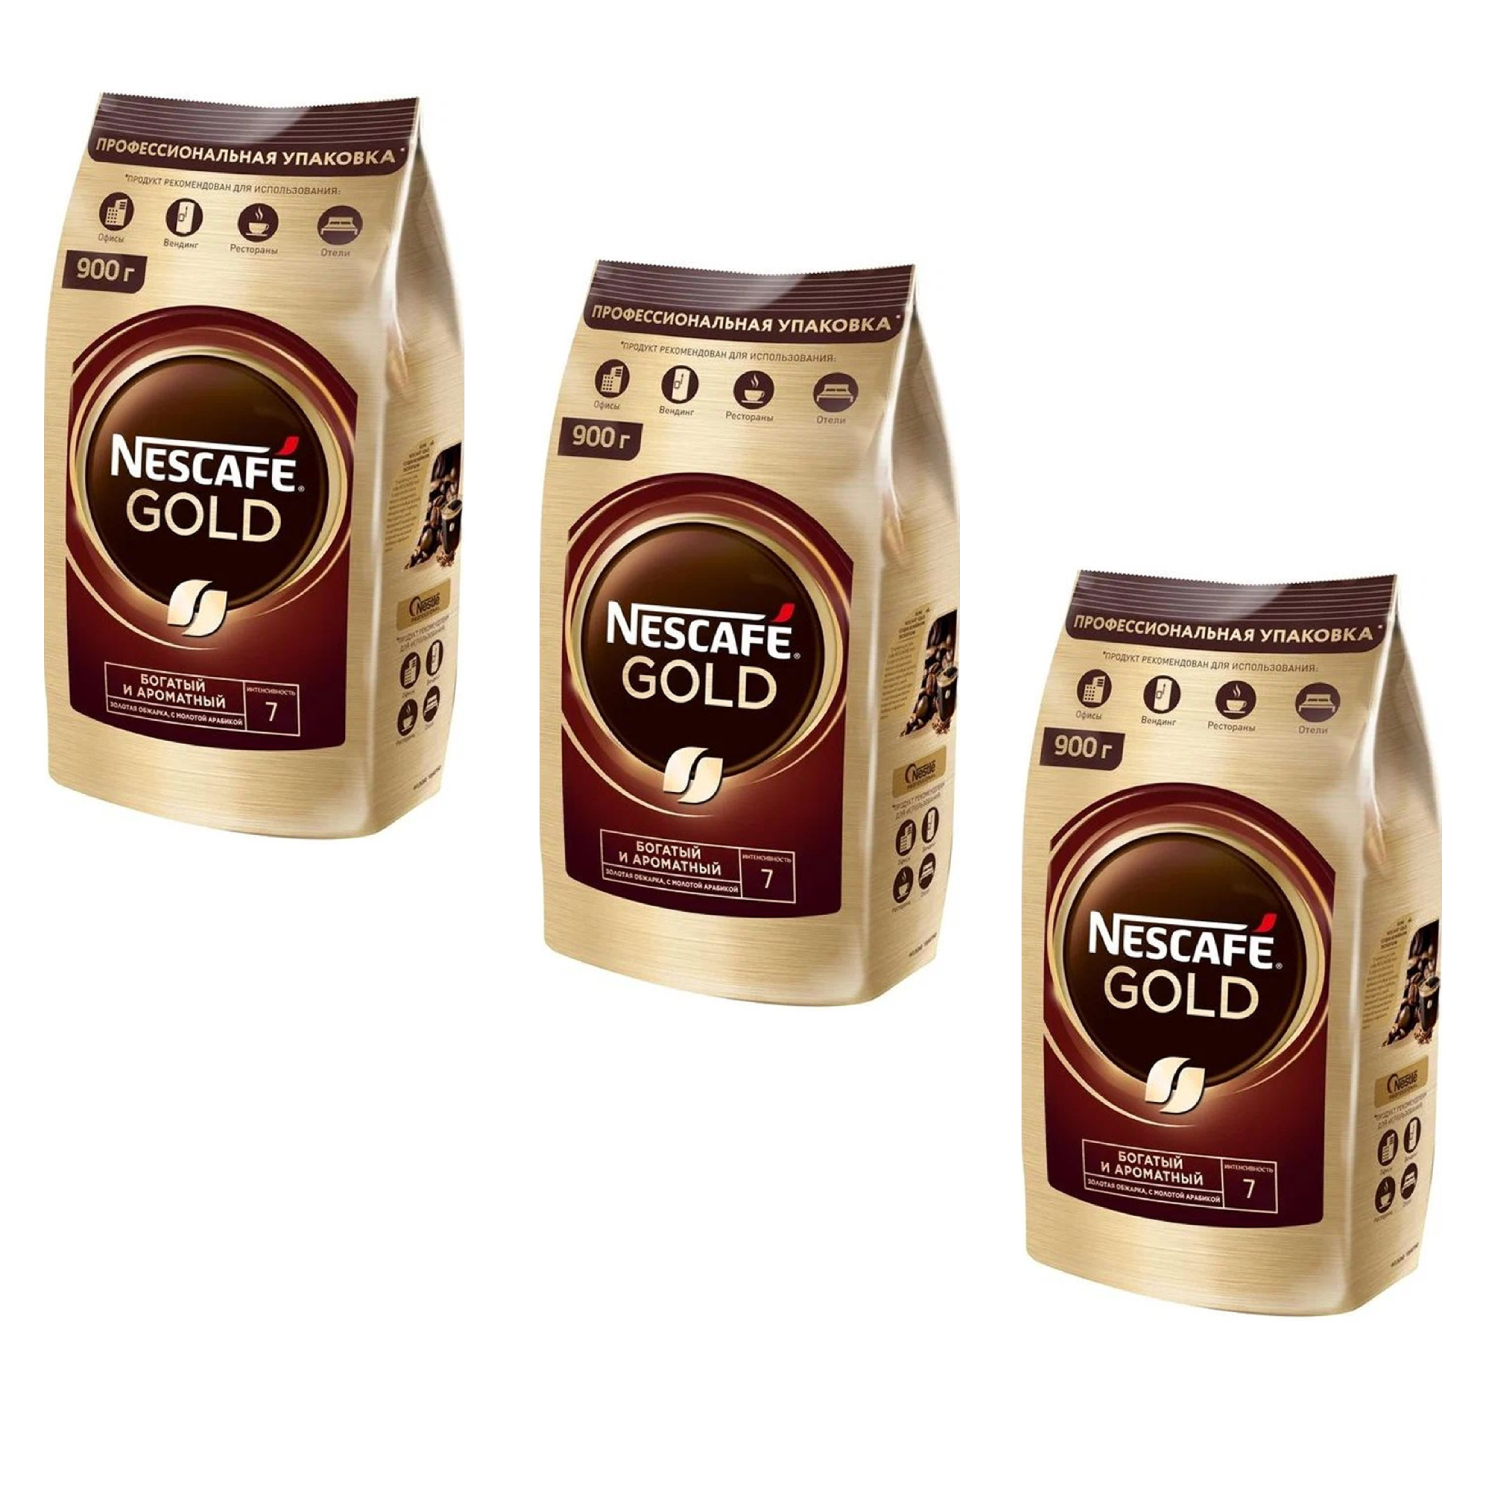 Nescafe Кофе растворимый Nescafe Gold м/у с добавлением молотого 900 г 3 штуки